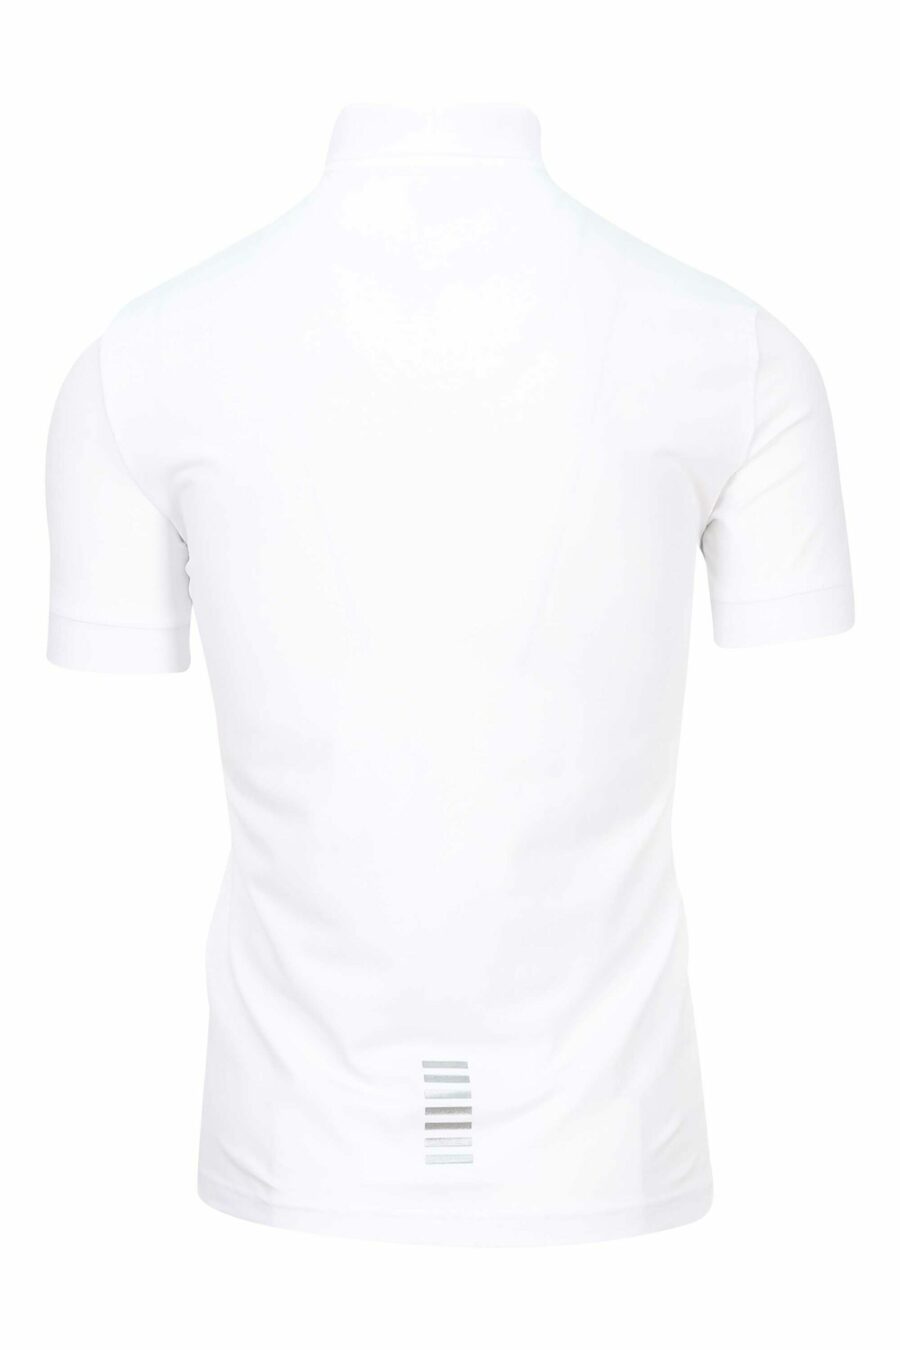 Weißes Poloshirt mit silbernem Minilogo mit Farbverlauf "lux identity" - 8055187159944 2 skaliert